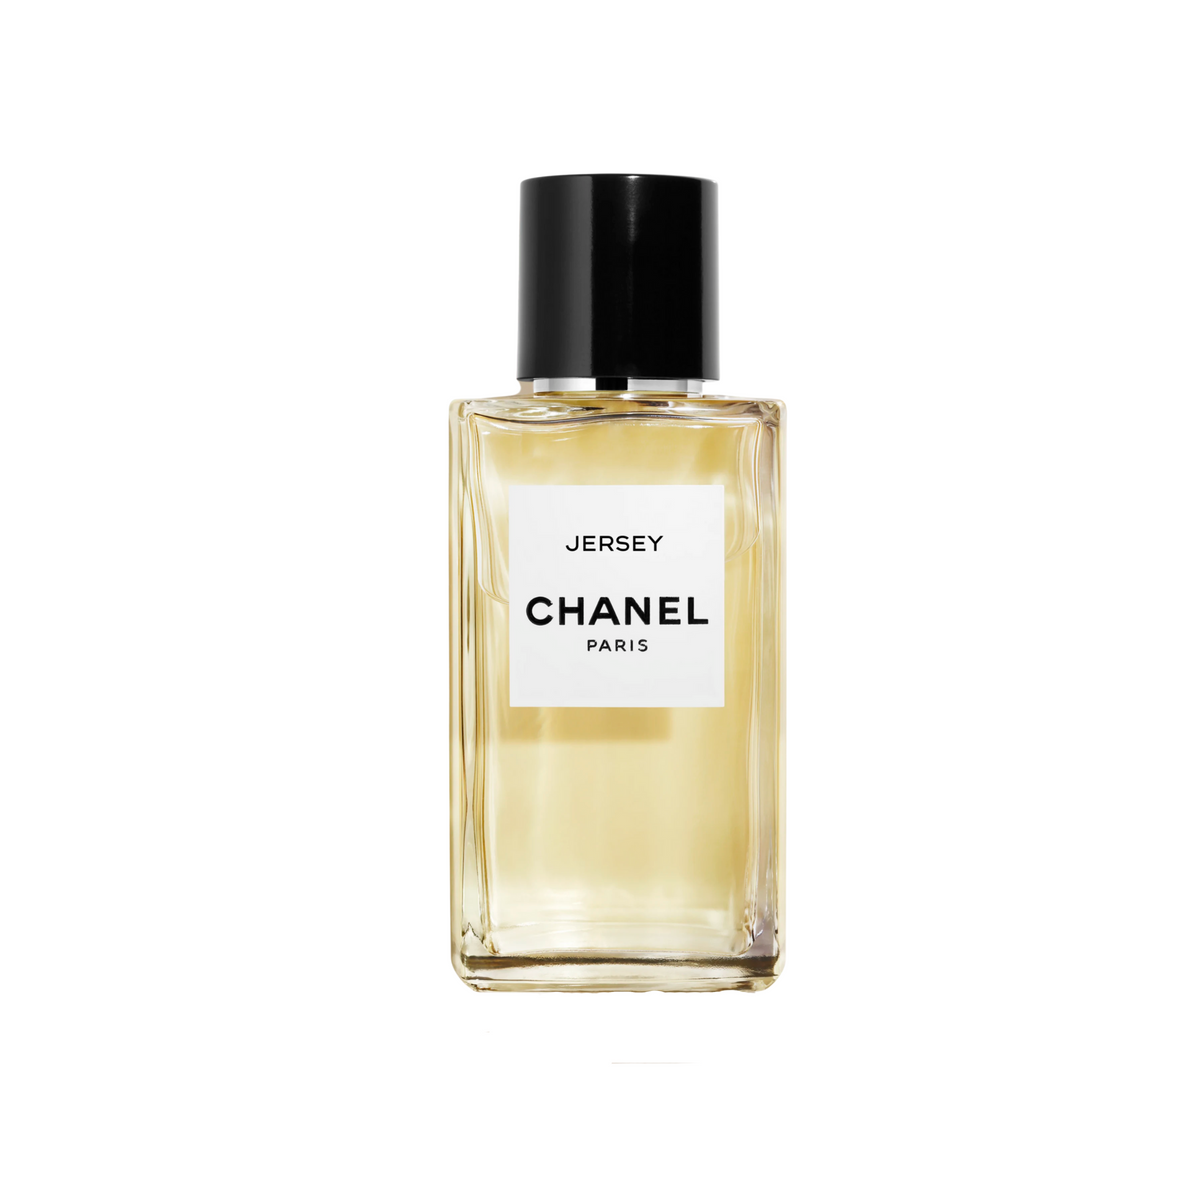 Chanel Jersey Eau de Parfum